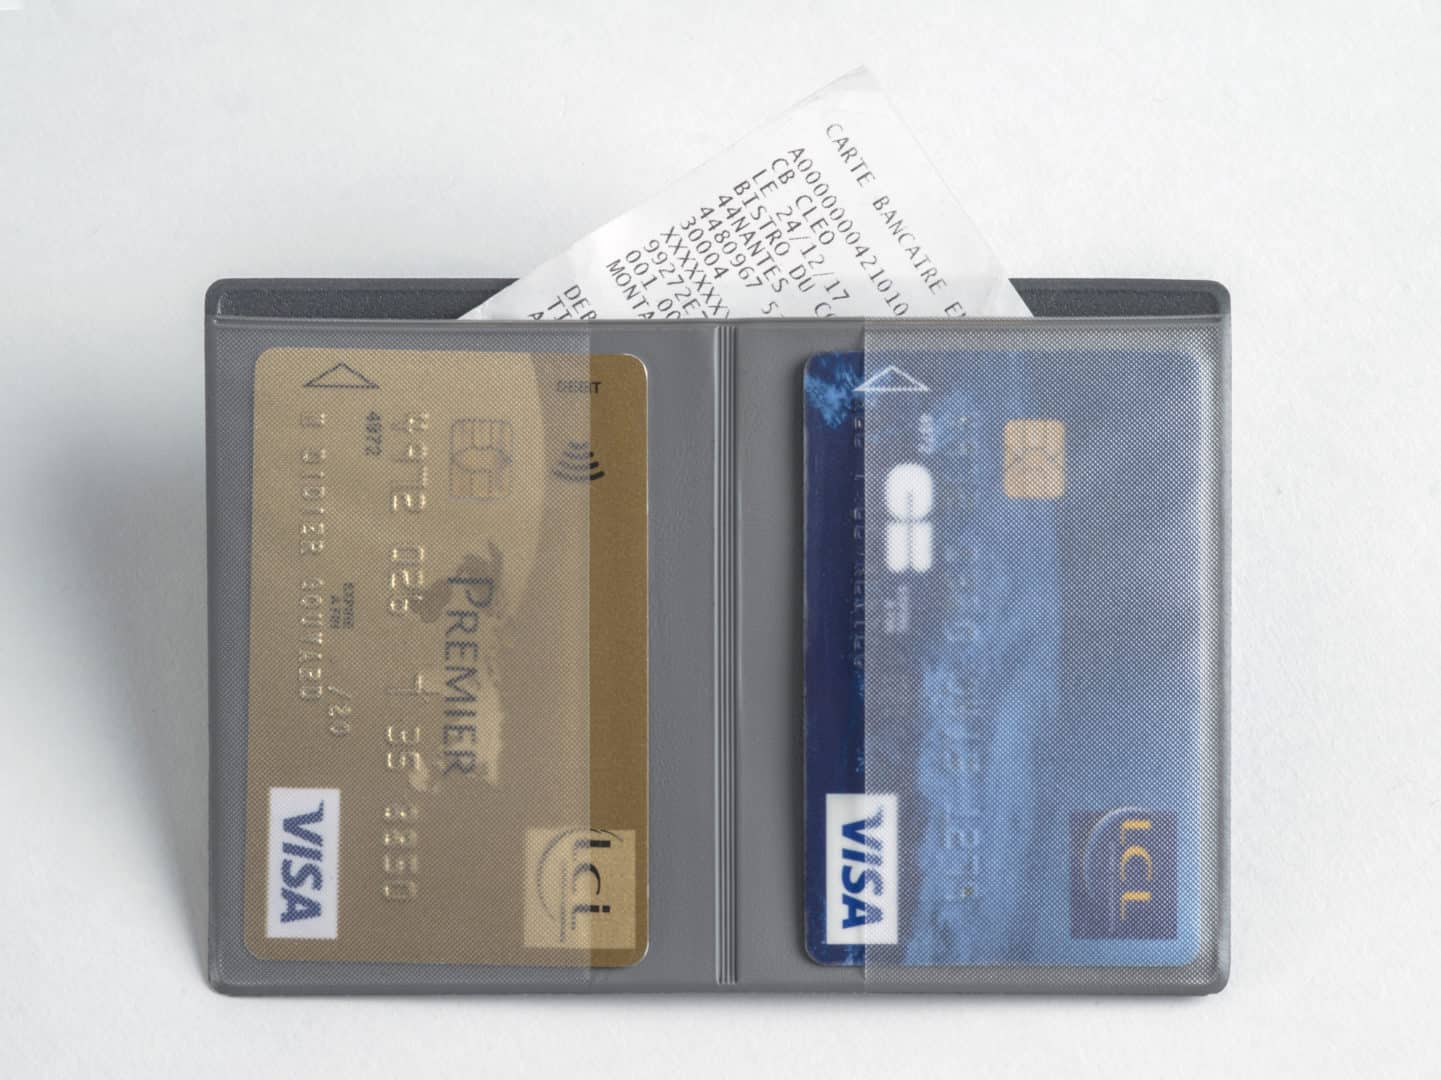 Porte carte bancaire avec facturette - ref. 376 - Dim. 10,5 x 15,5 cm -  Etablissements Bancaires Point Change - Secteur bancaire - Porte carte,  étui, pochette